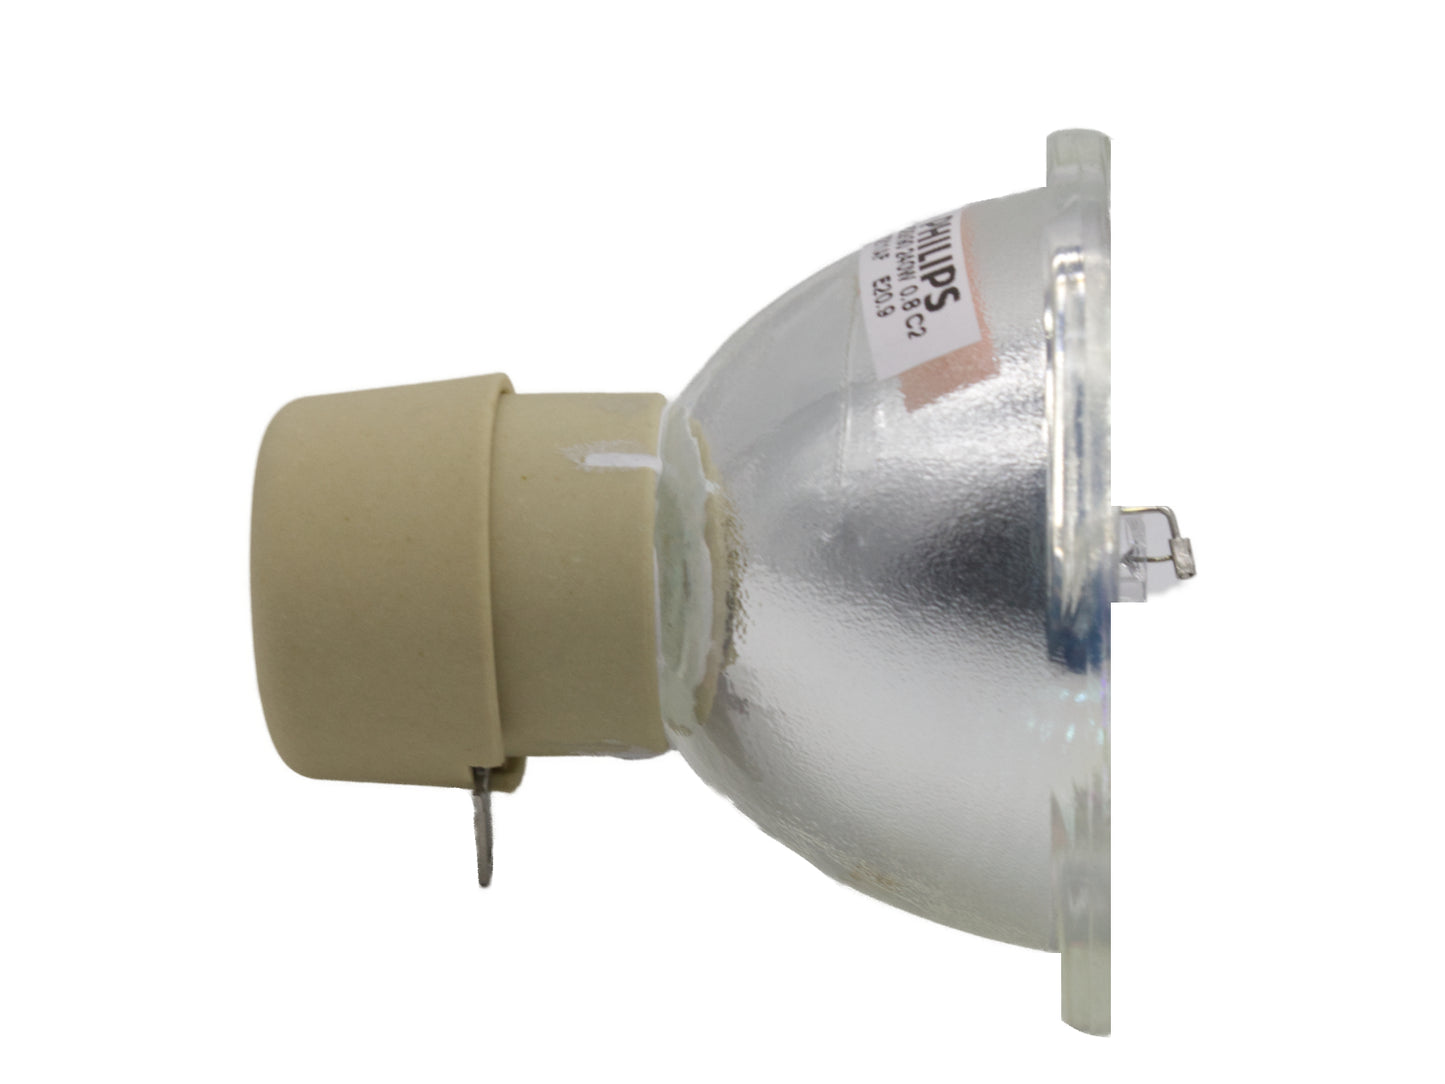 PHILIPS Ersatzlampe UHP 240-190W 0.8 E20.9 | Beamerlampe für diverse Projektoren - Bild 2